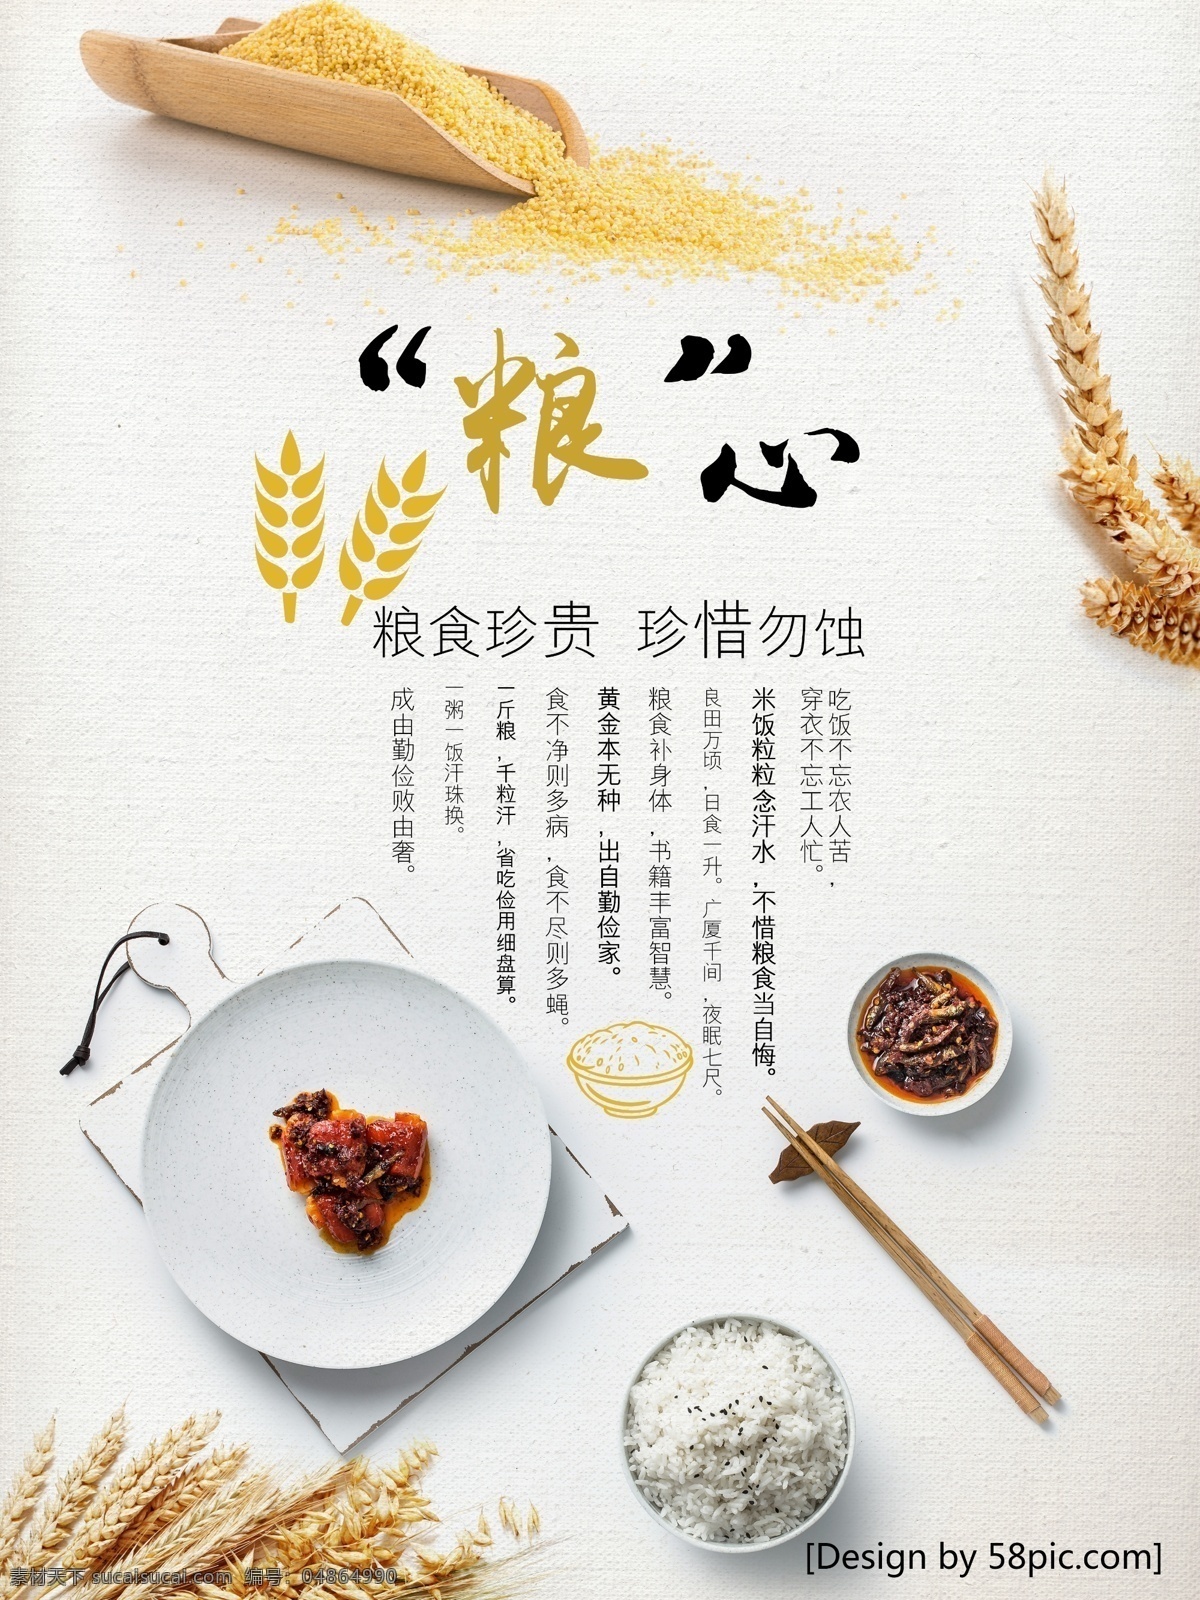 珍惜 粮食 温馨 暖色 粮 心 创意 公益 宣传海报 粮食珍贵 小麦 米饭 白碗 筷子 盘子 简约背景